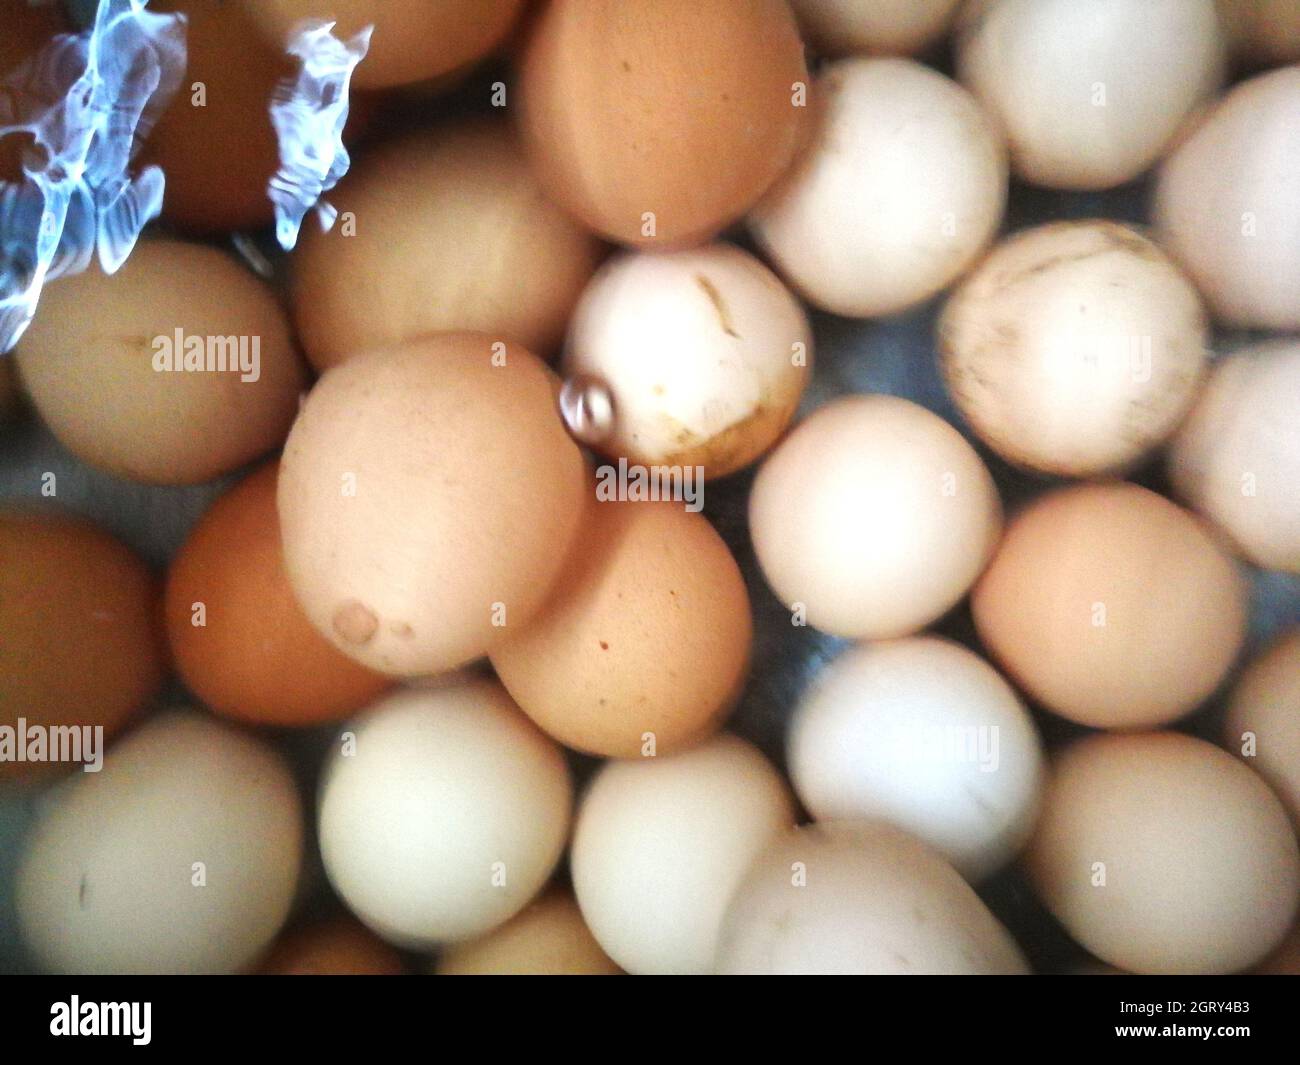 Full Frame Shot Of Eggs In Water Stock Photo